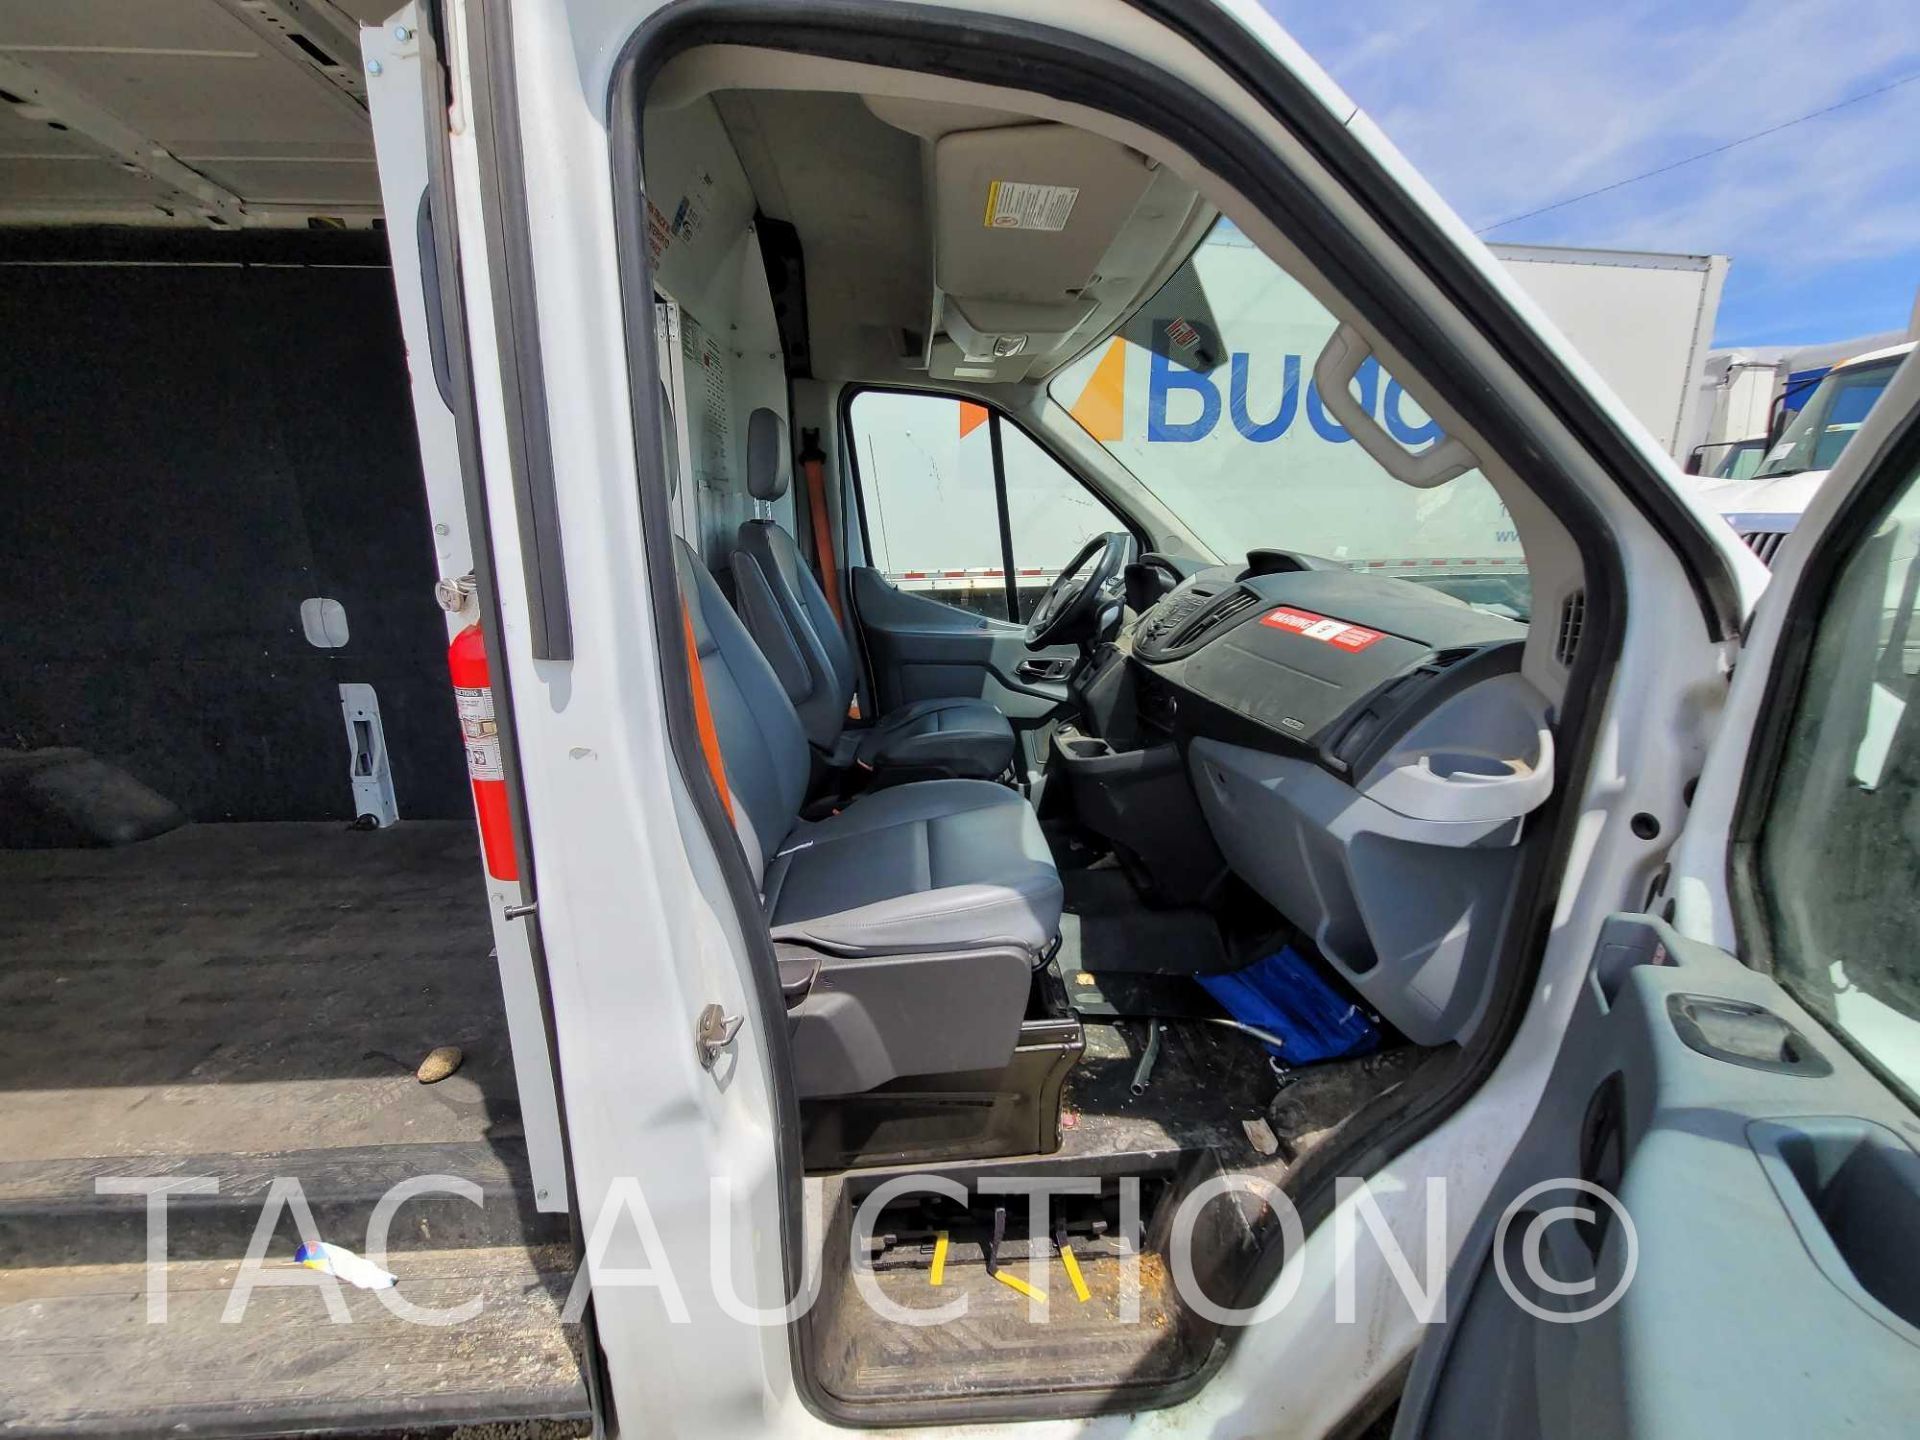 2019 Ford Transit 150 Cargo Van - Image 20 of 49